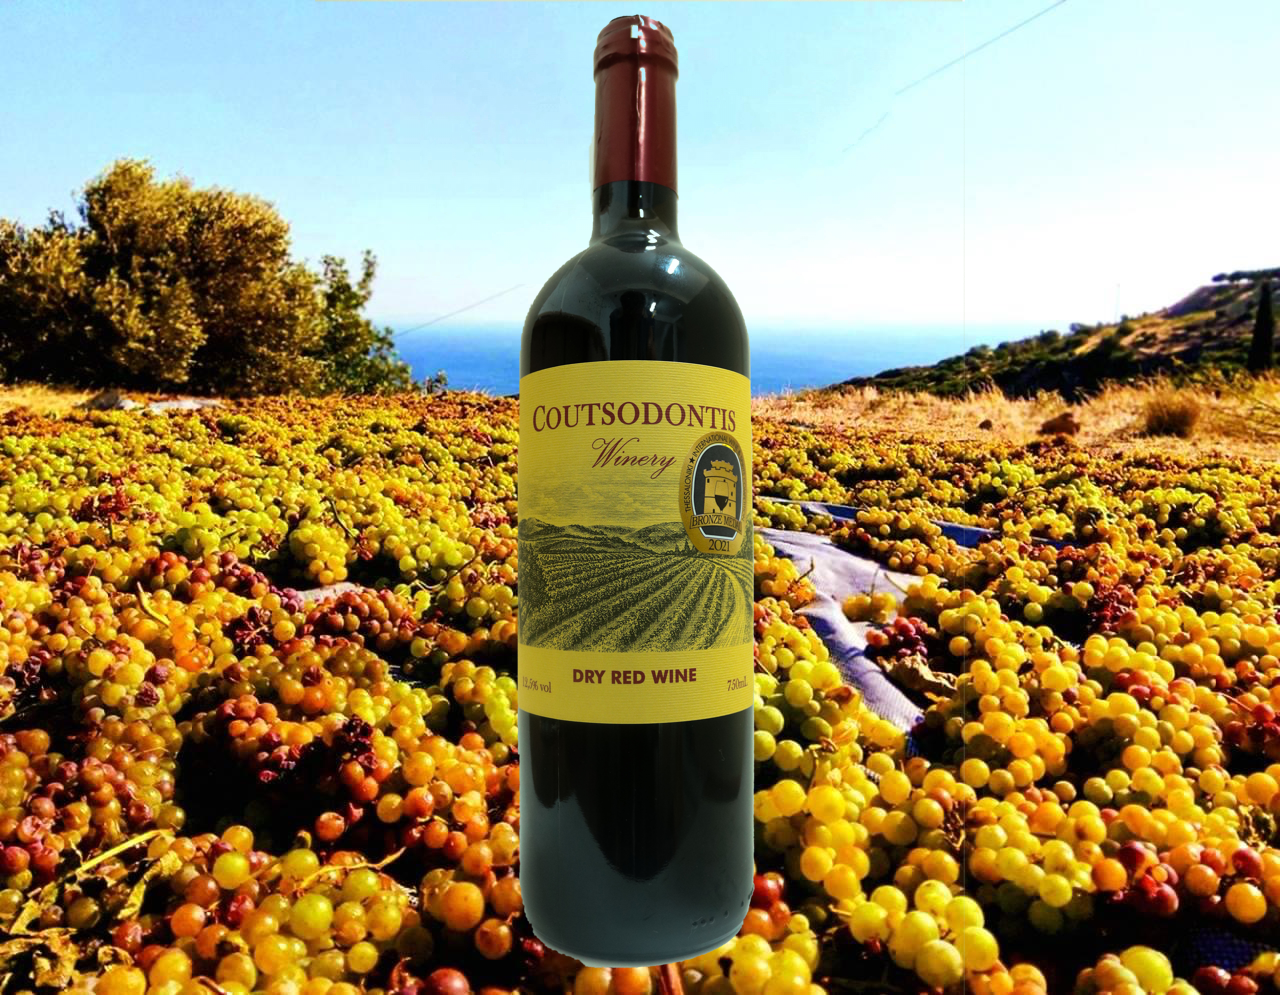 toewijzing kiezen Beven Proef de beste droge rode wijn uit Samos